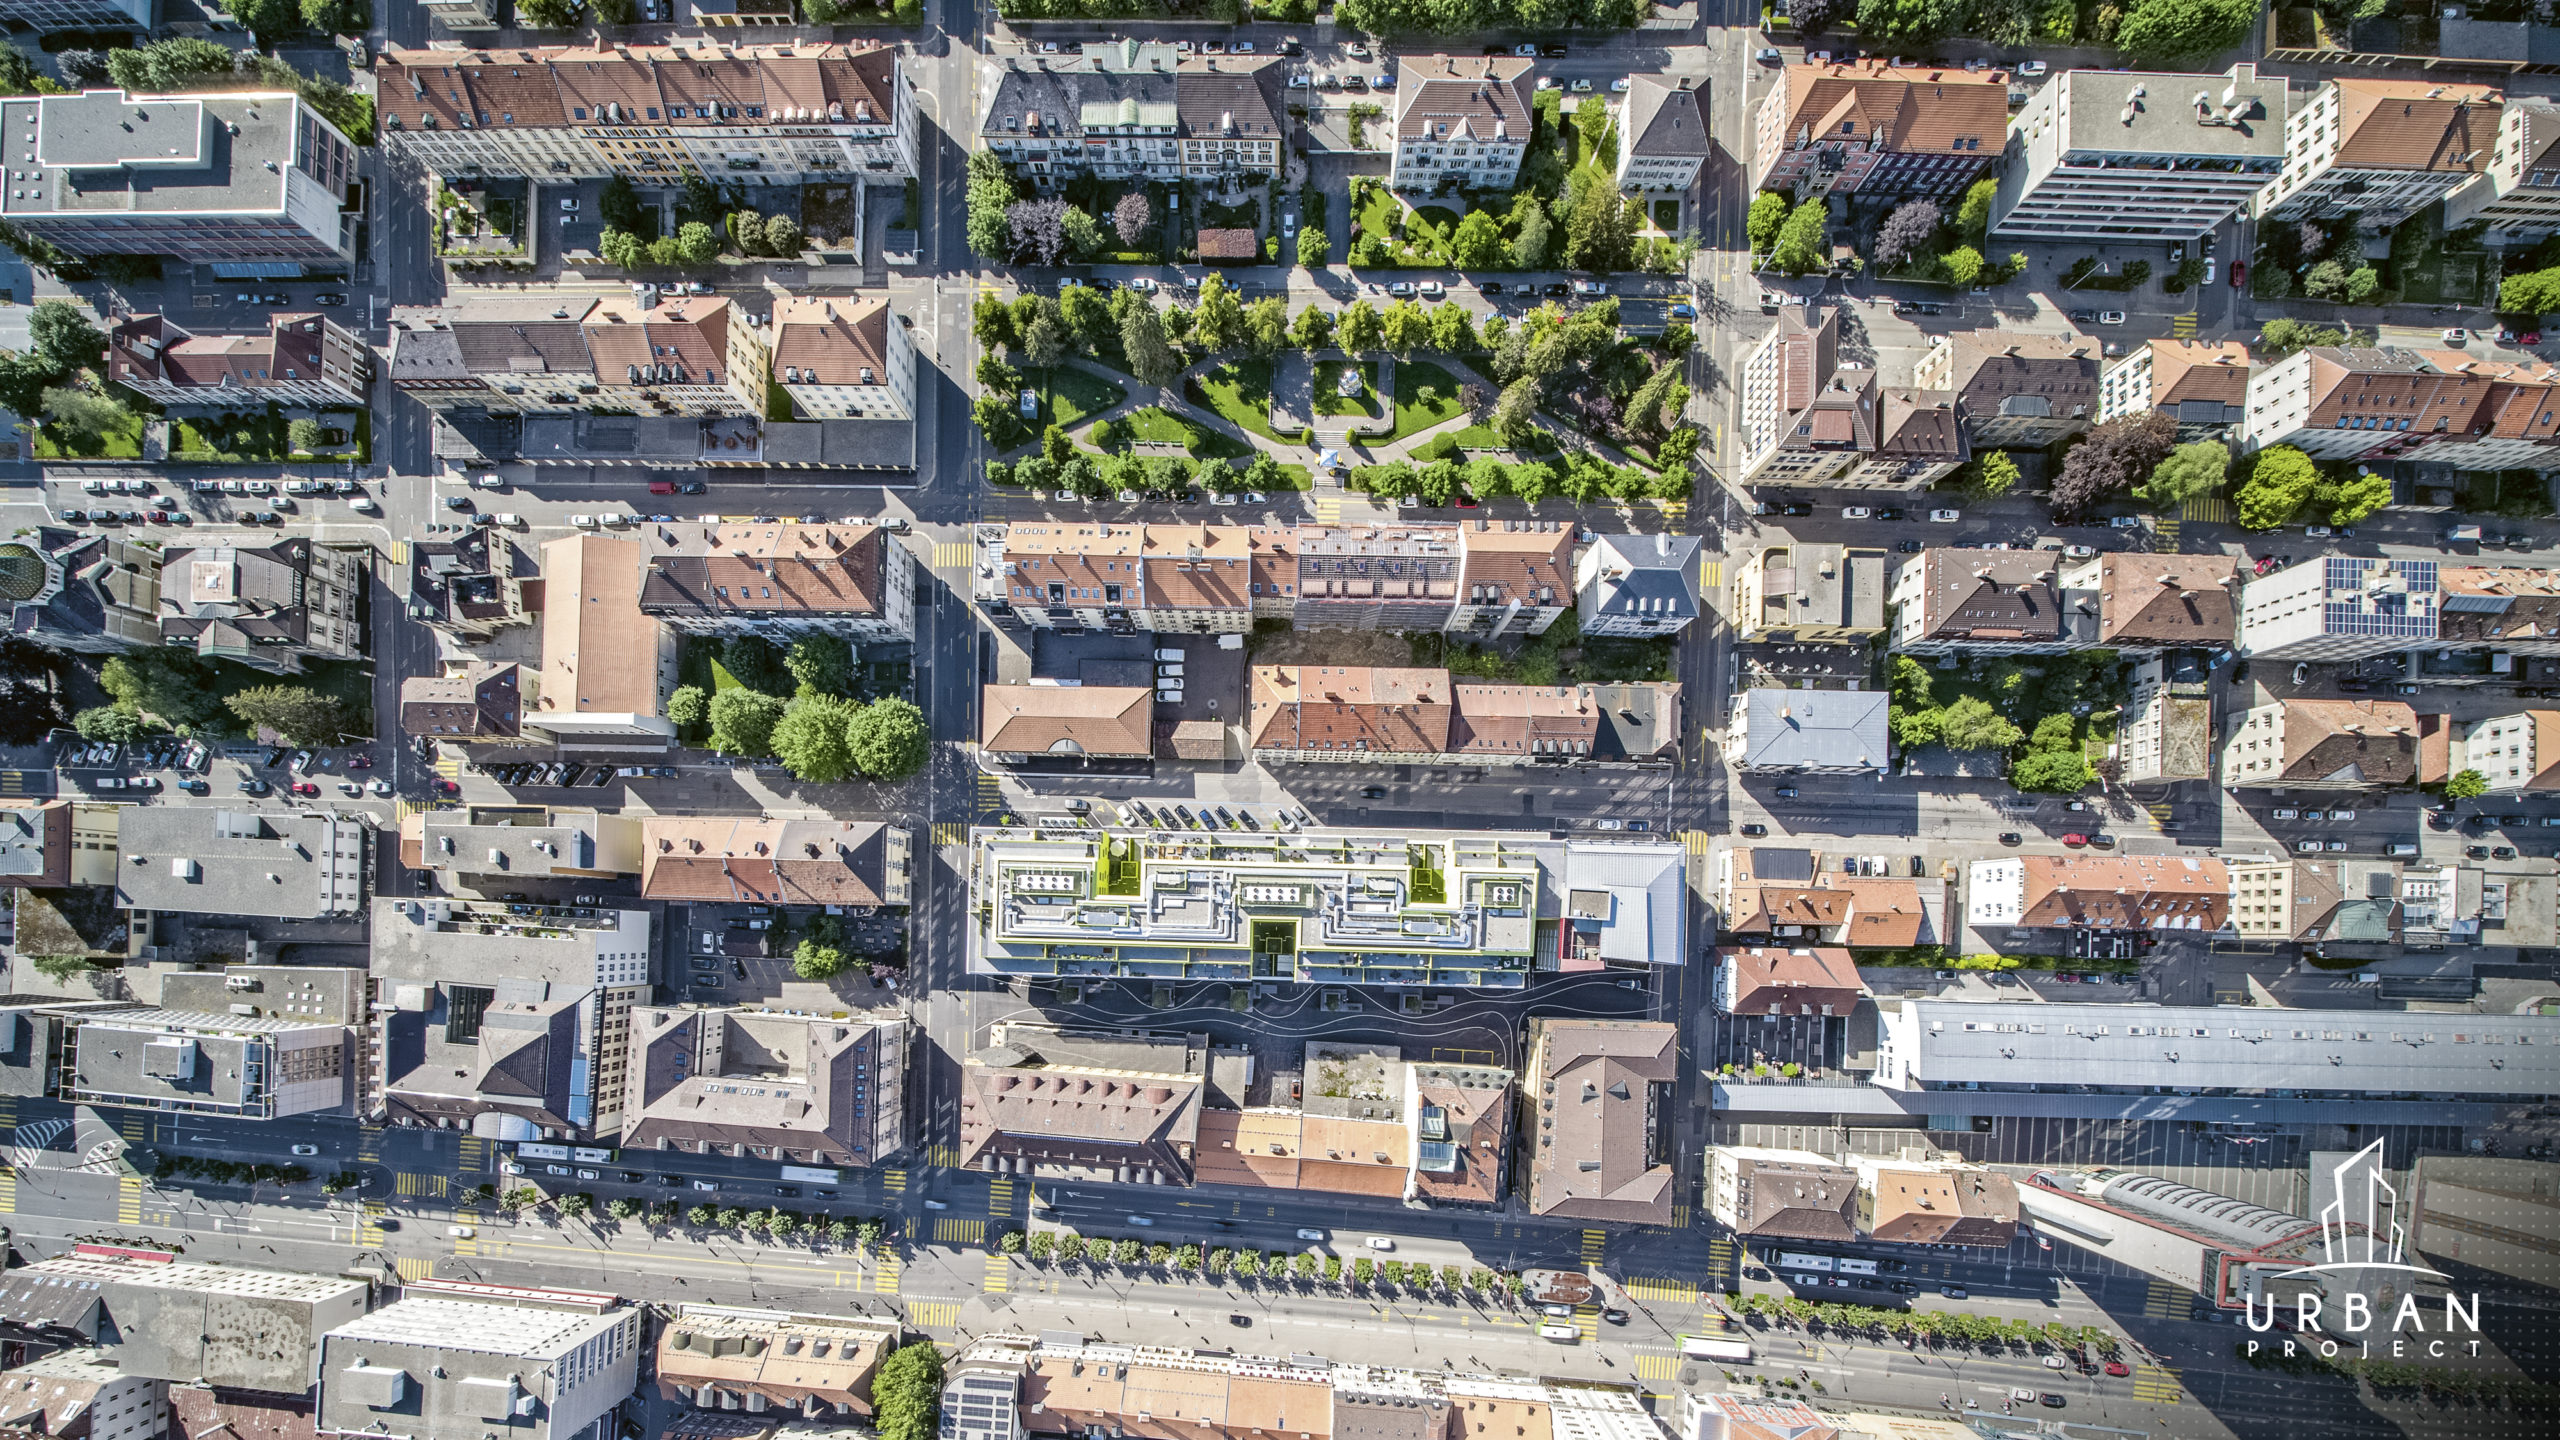 Une photo de La Chaux-de-Fonds vue de haut permettant d'observer l'architecture orthogonale propre à la ville